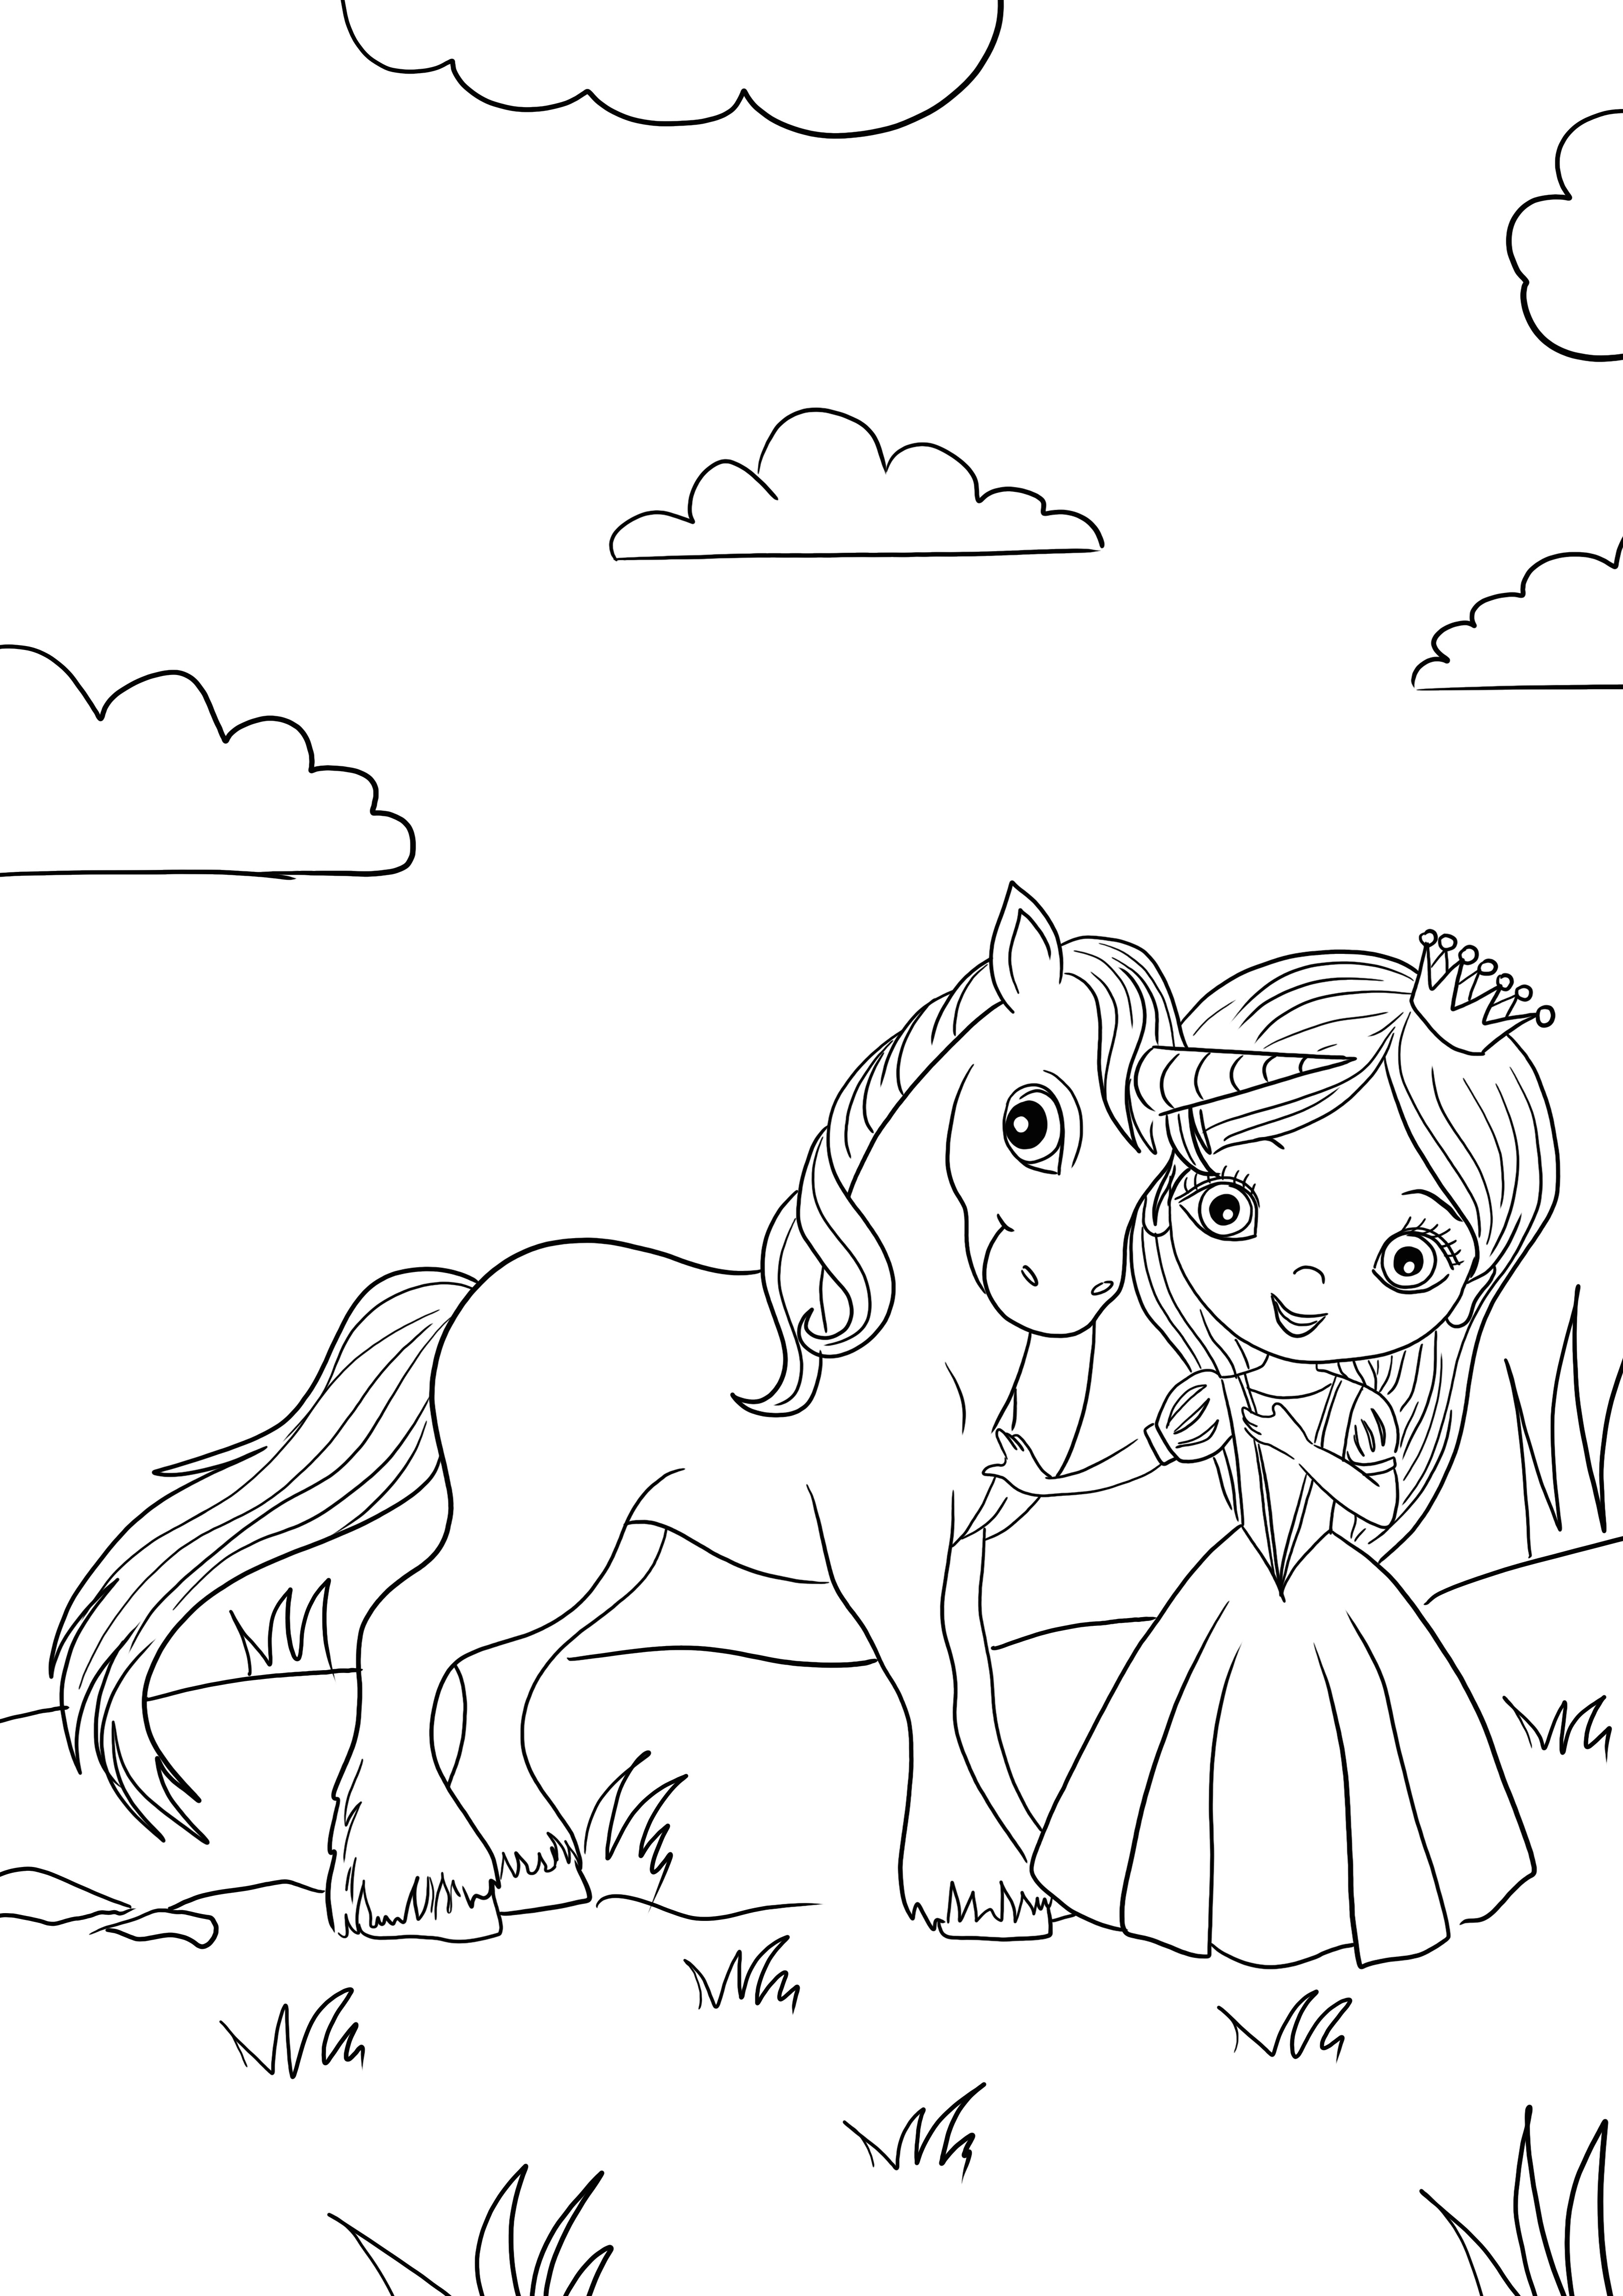 Princesa y unicornio para descargar y colorear gratis